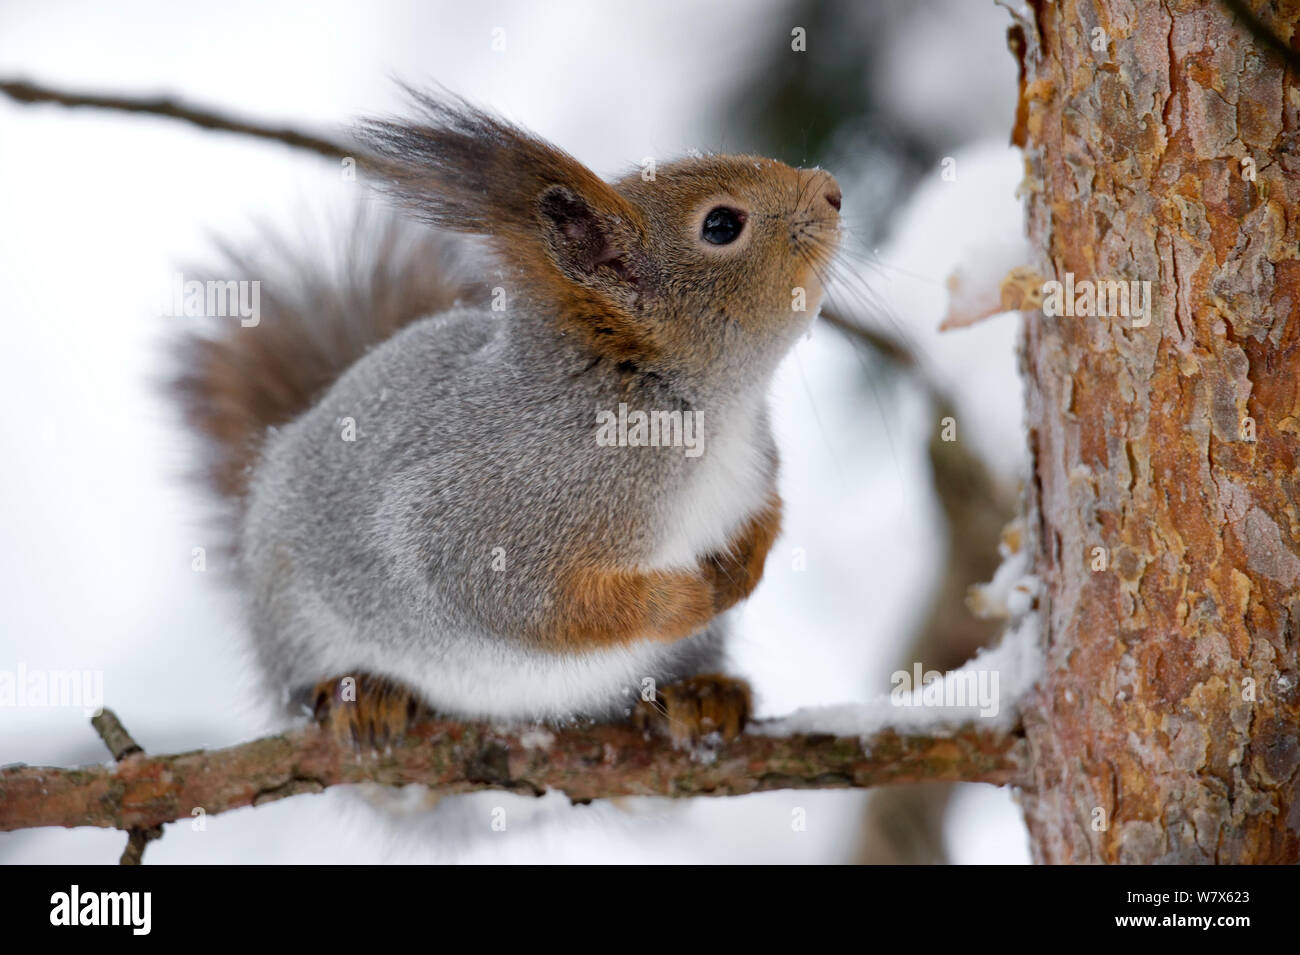 Eurasian écureuil roux (Sciurus vulgaris) assis sur la branche de l'arbre enneigé, en Finlande. Février. Banque D'Images